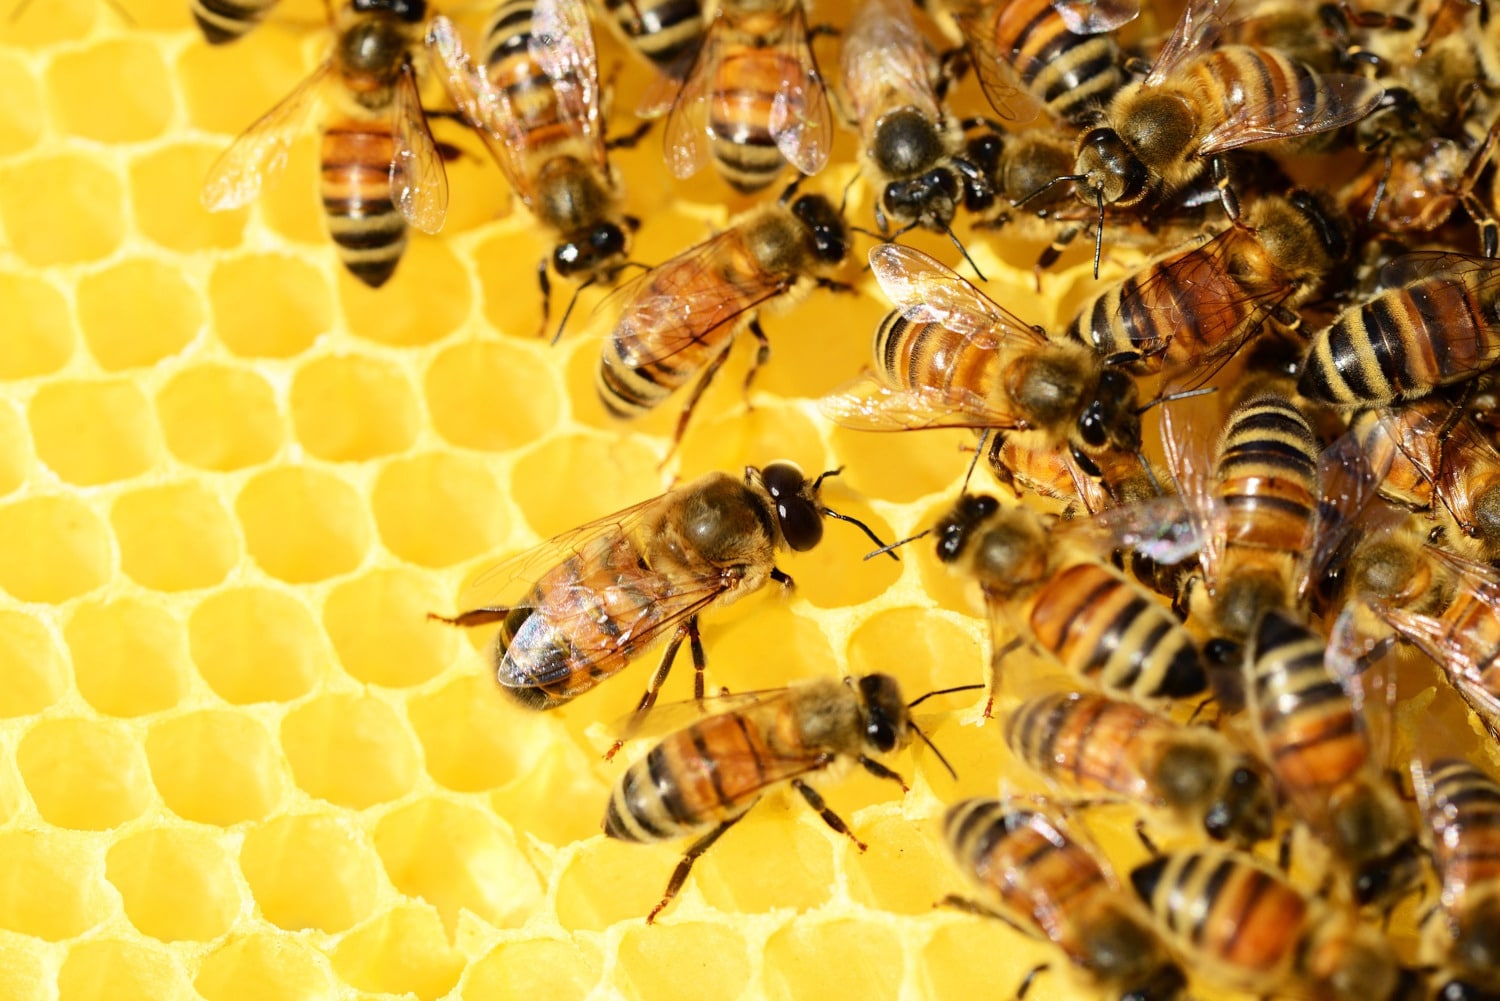 Duree De Vie De L Abeille Les abeilles vivent deux fois moins longtemps qu'il y a 50 ans